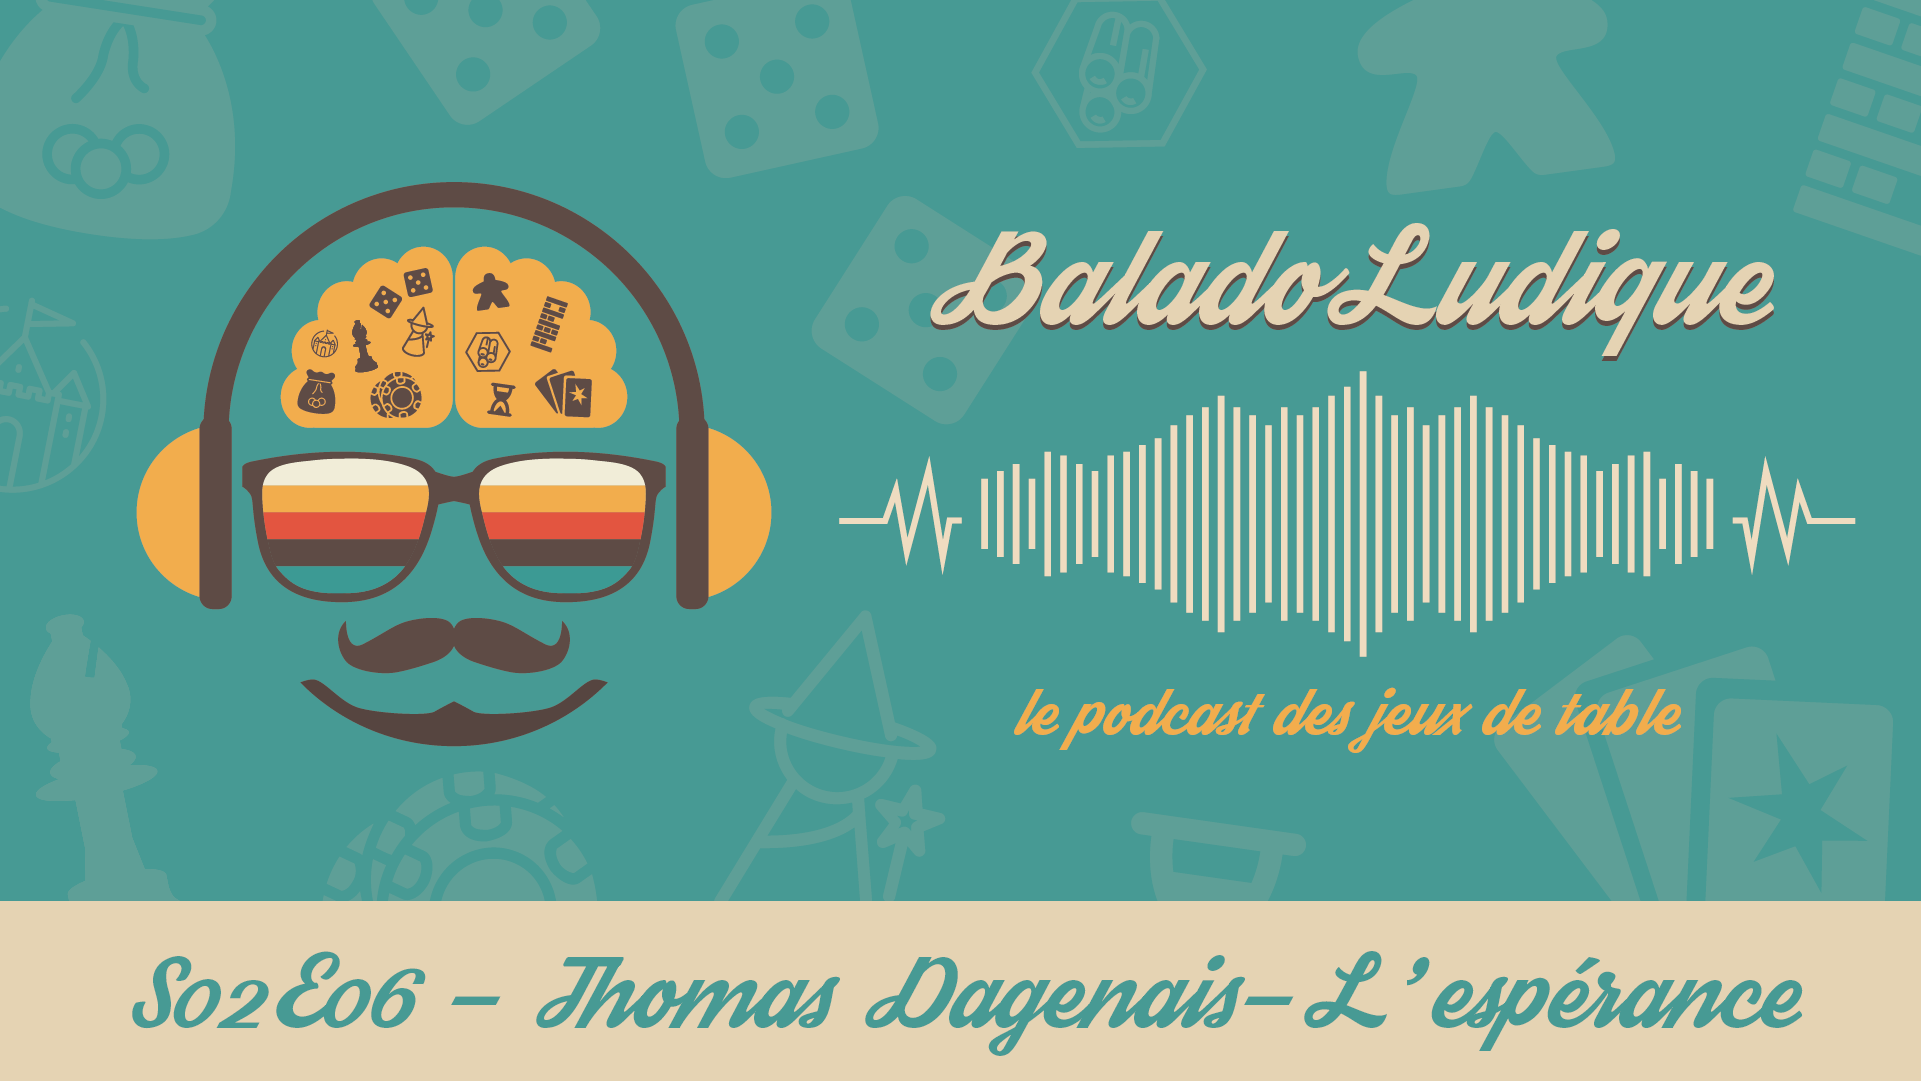 Thomas Dagenais-L'espérance - BaladoLudique - s02e06